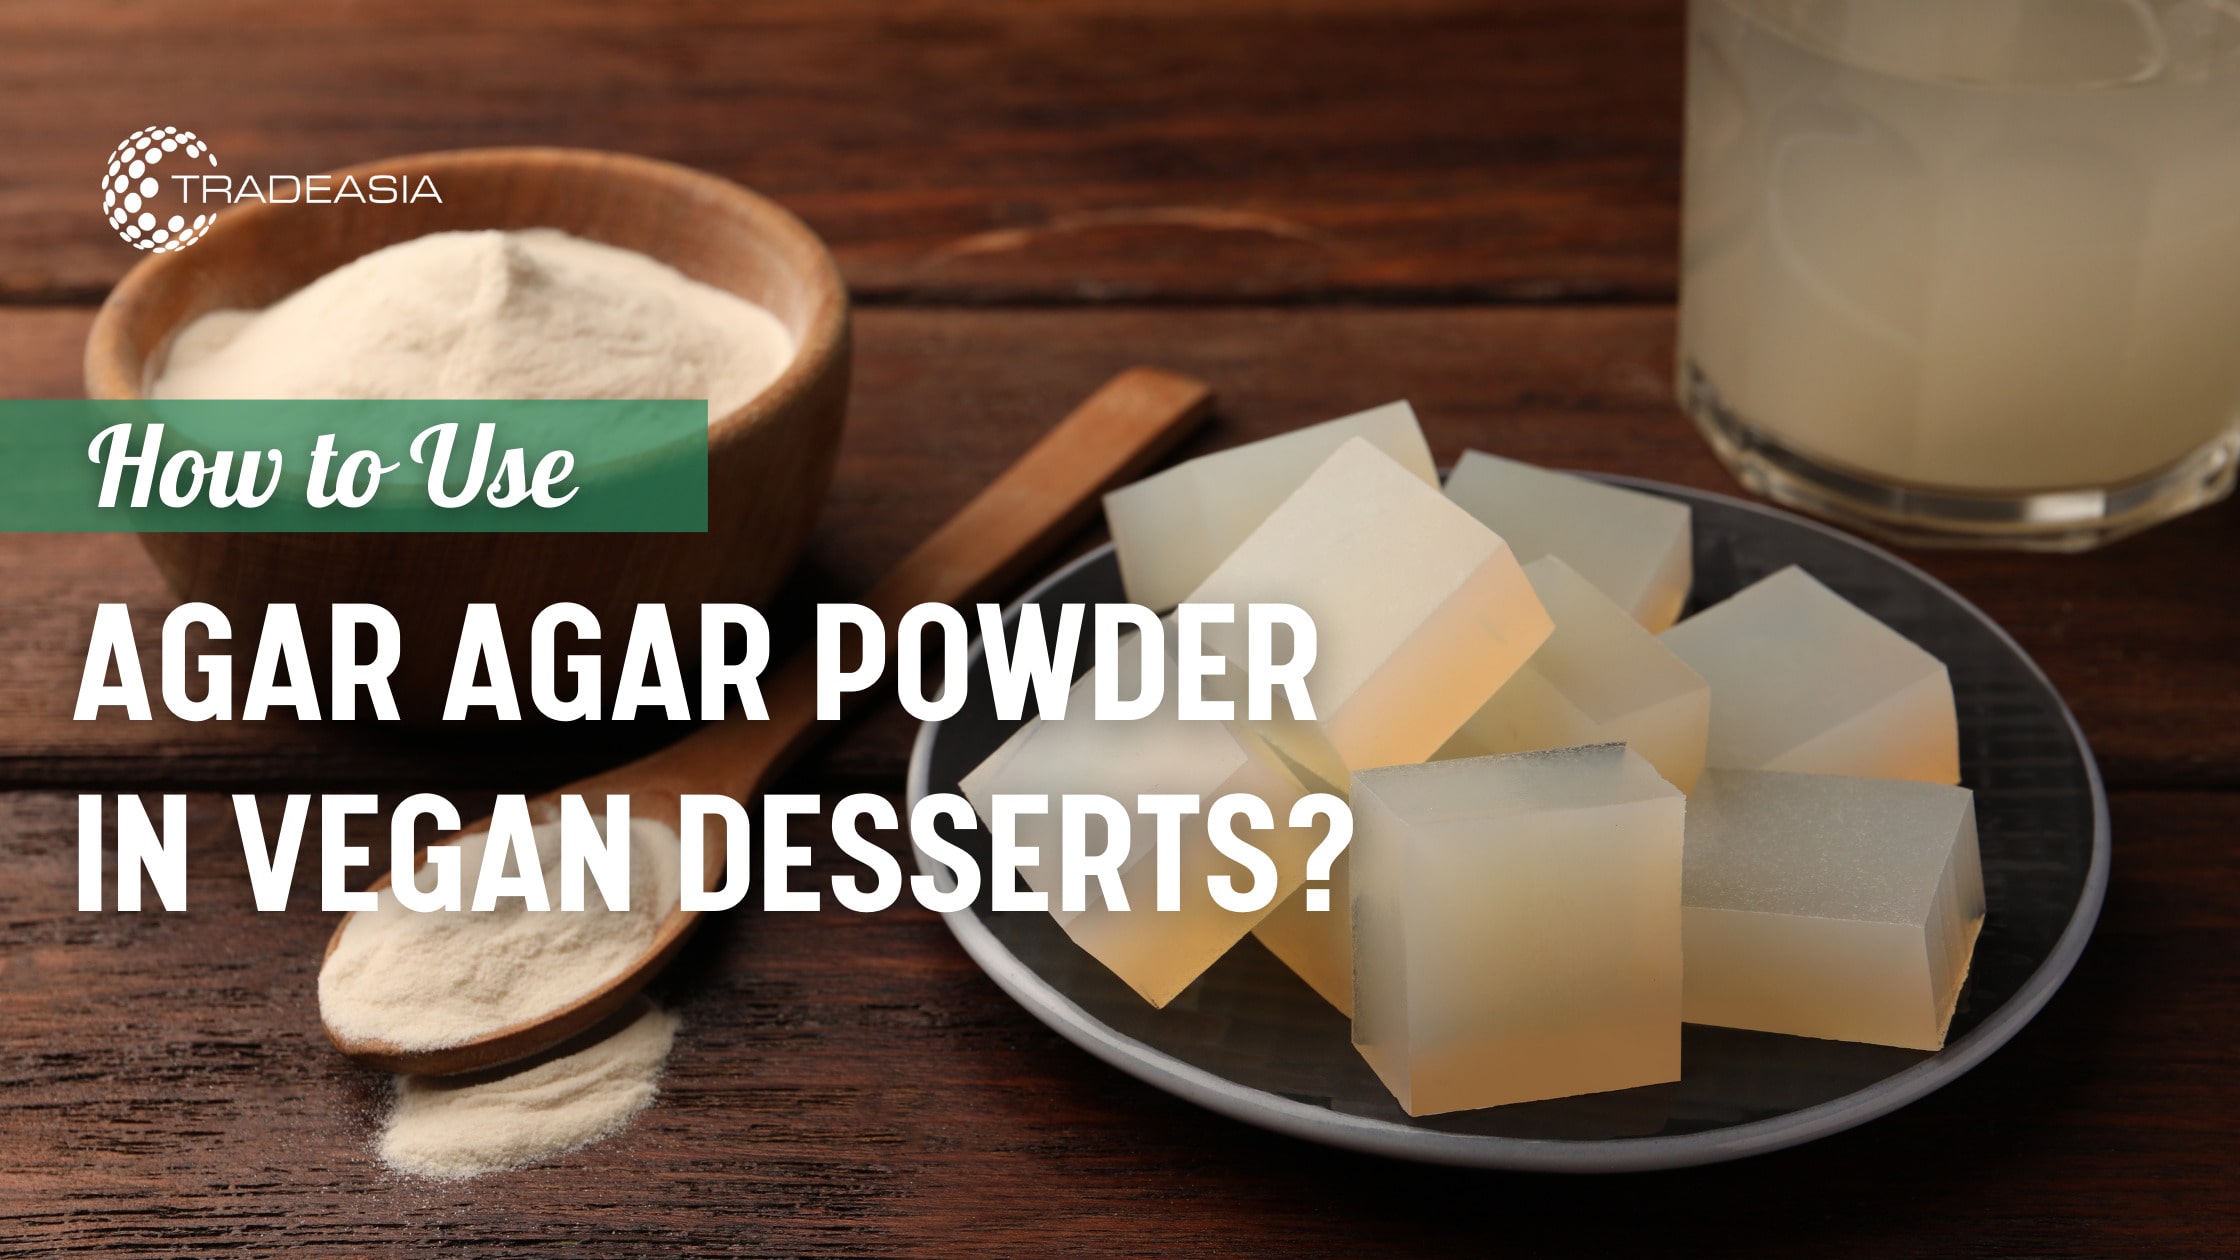 How to Use Agar Agar Powder in Vegan Desserts?